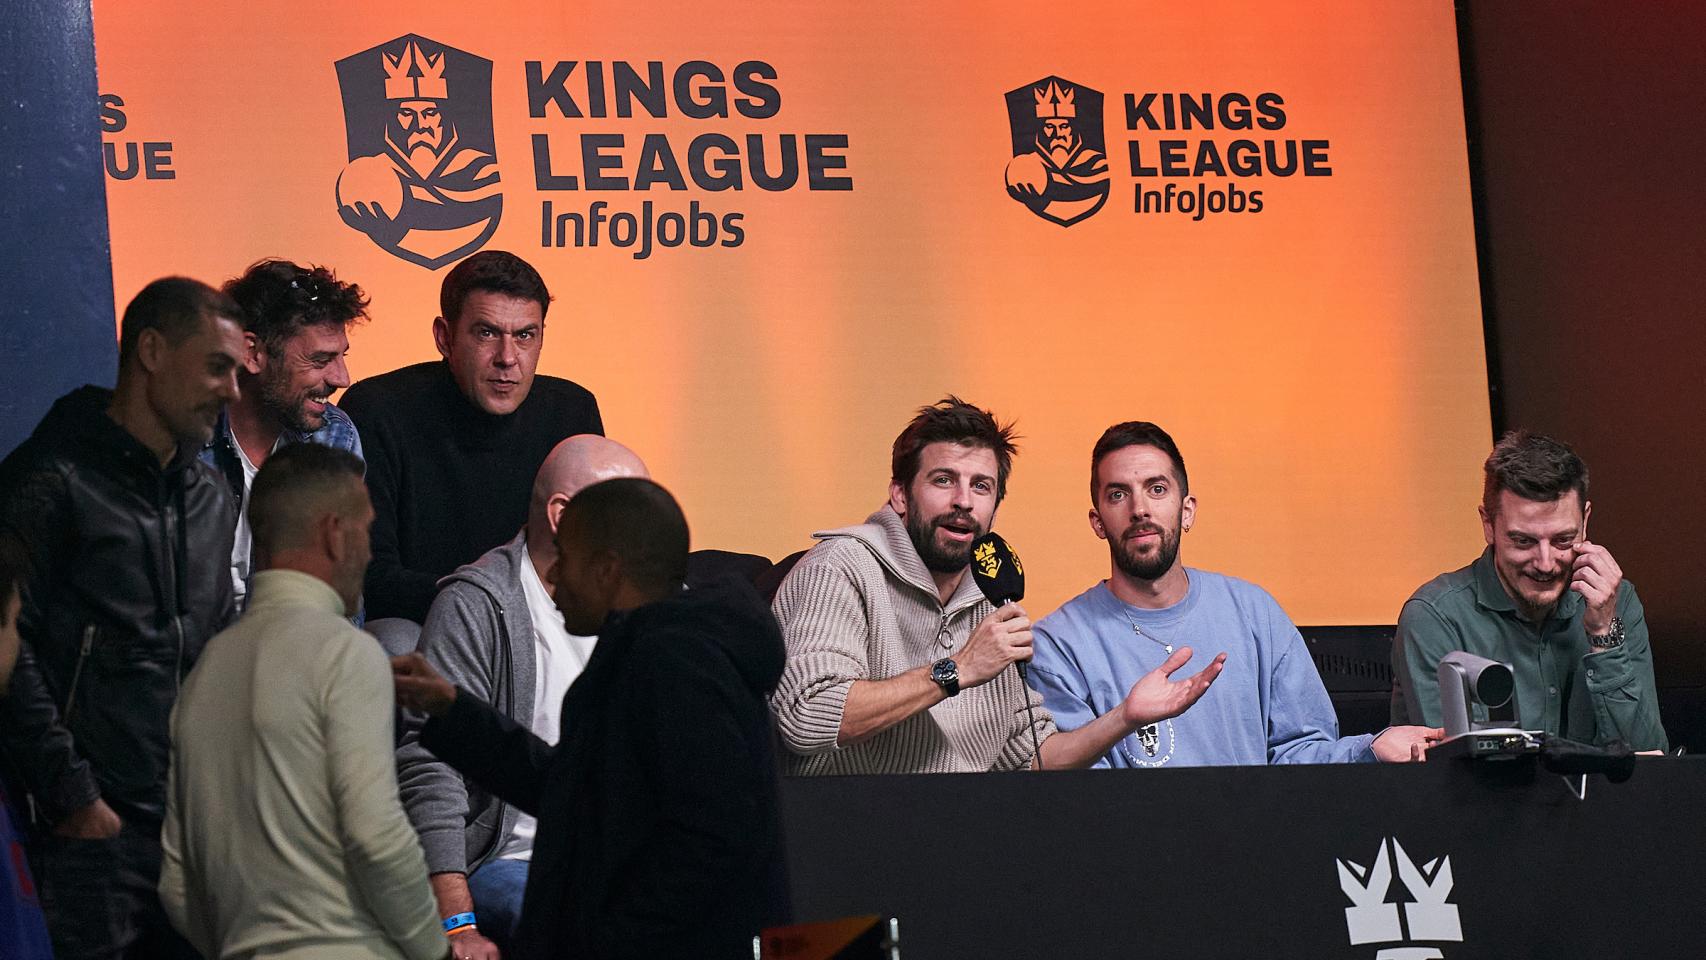 La Kings League de Piqué: una bomba de marketing para las marcas